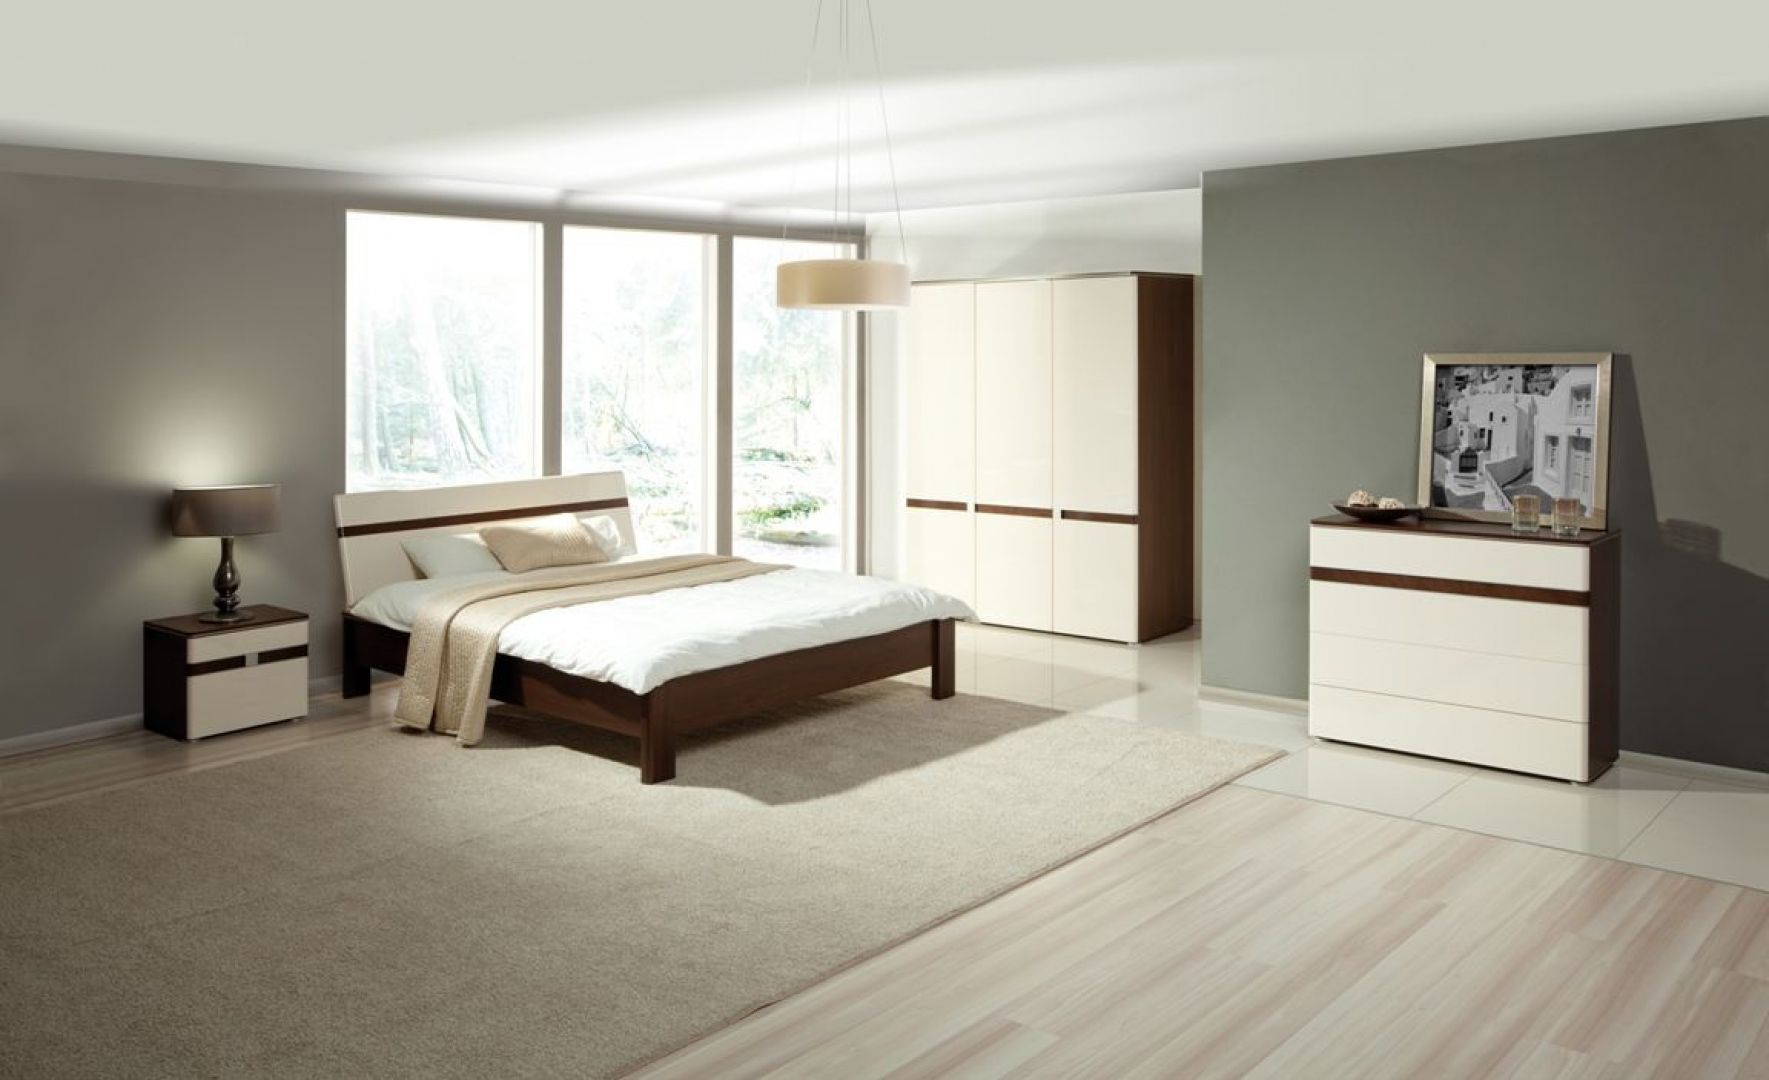 Sypialnia Siena w kolorze białym na wysoki połysk. Oparcie łóżka wyposażone jest w efektowny system oświetlania. Fot. Agata Meble 